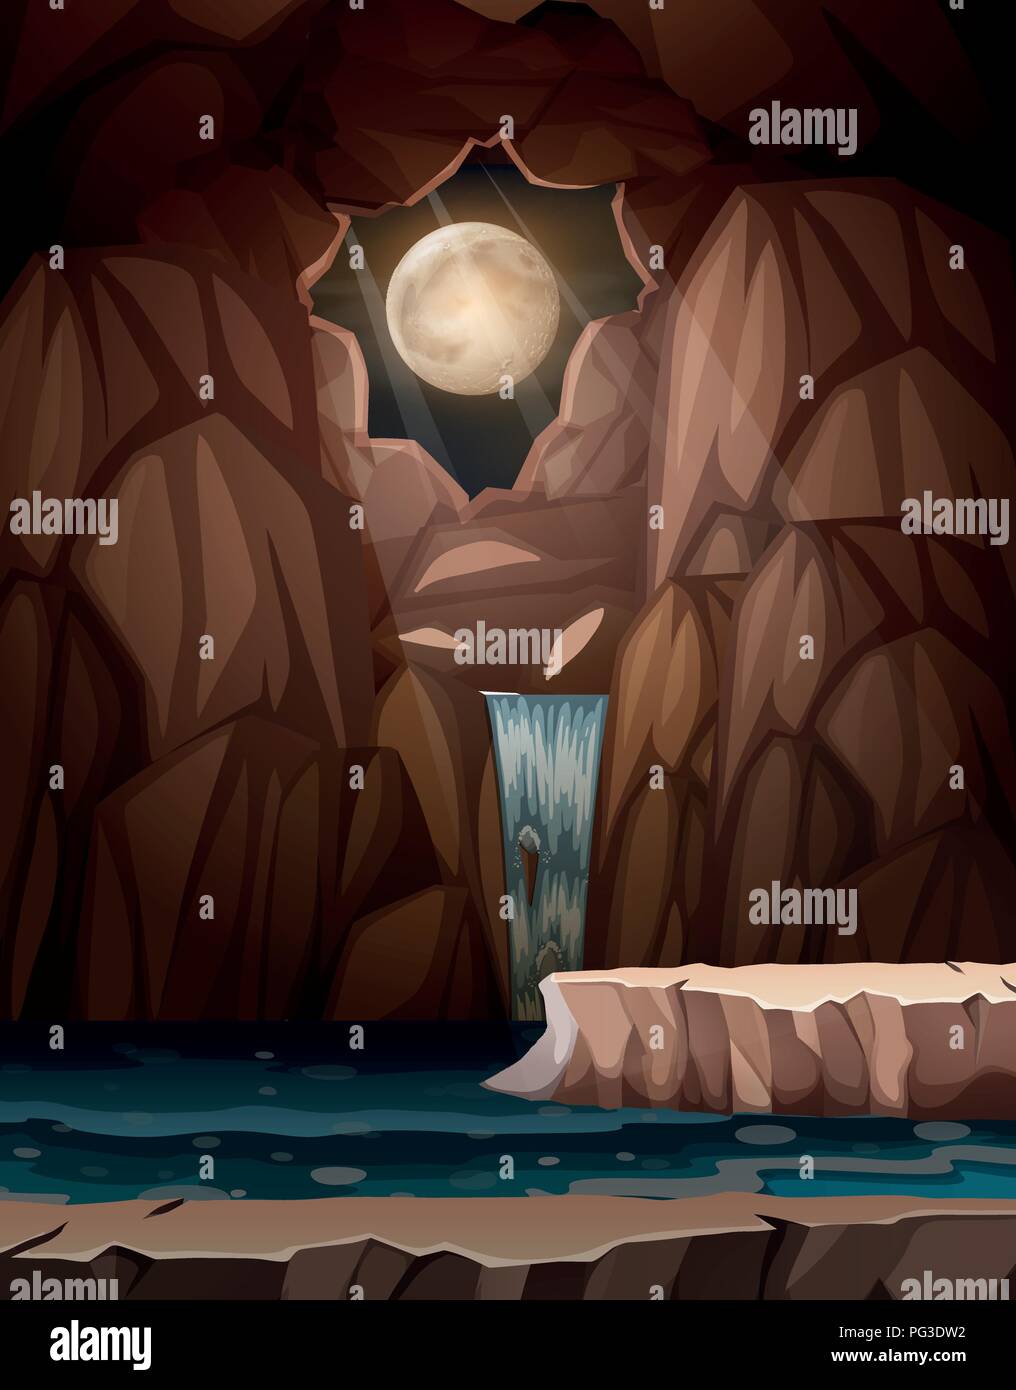 Chute d'une caverne à l'illustration de nuit Illustration de Vecteur